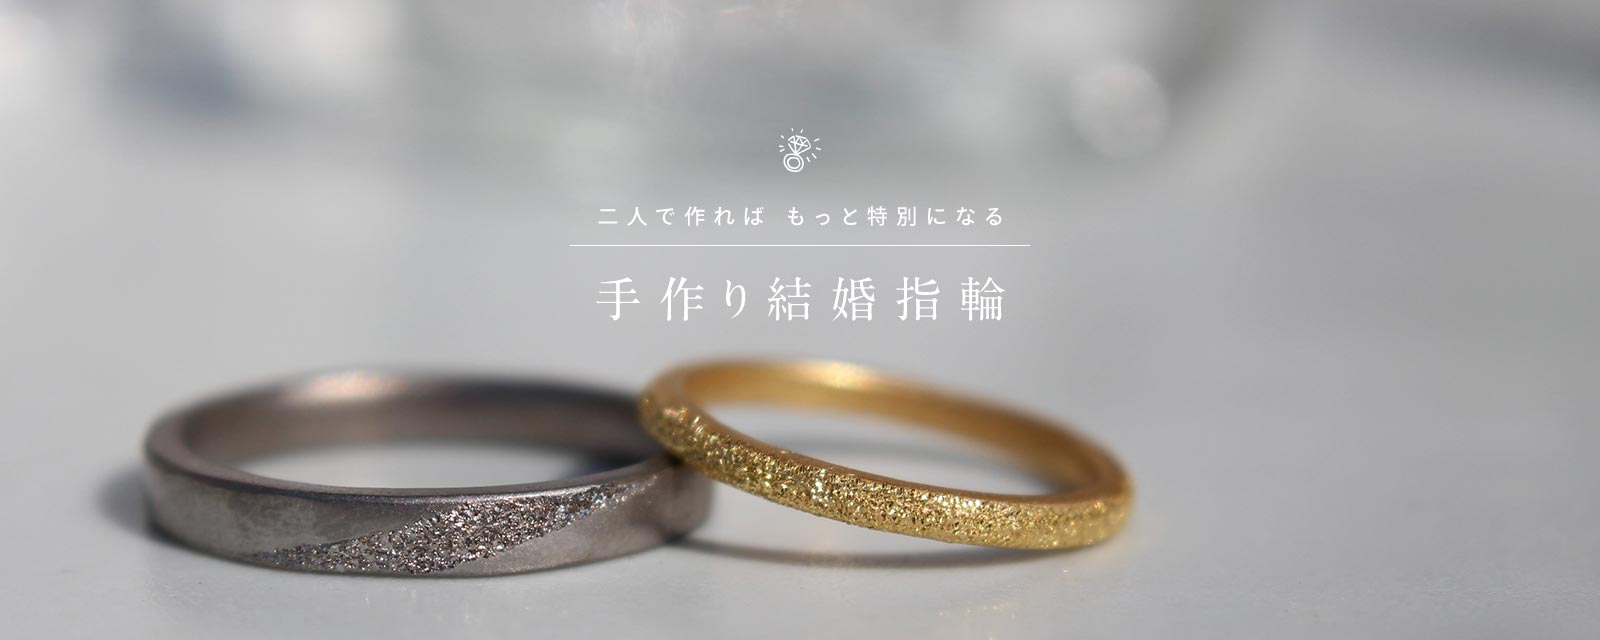 福岡で人気]2人で作る結婚指輪・婚約指輪「手作り指輪のお店M-studio